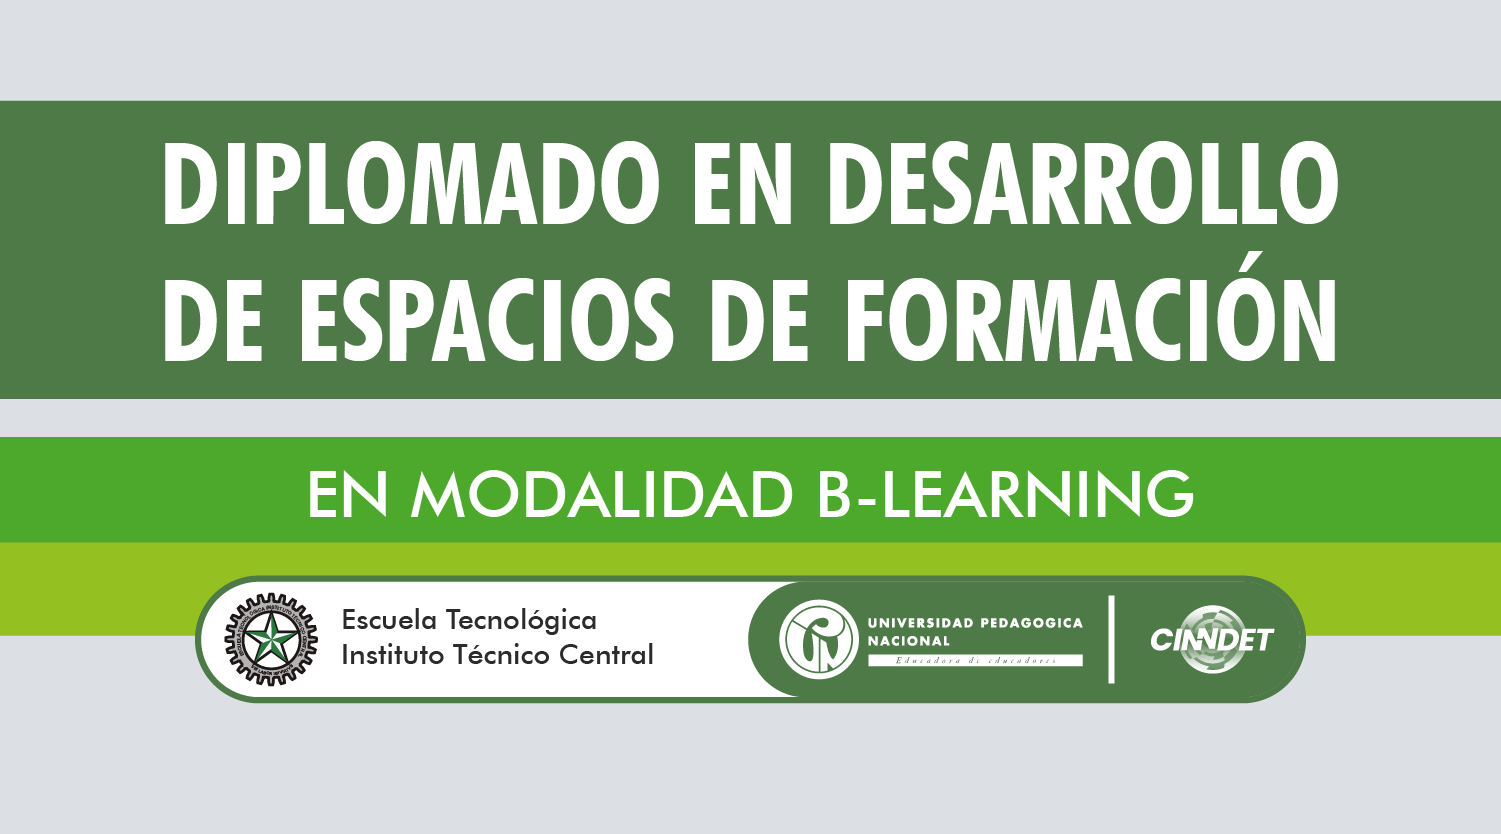 ETIC DIPLOMADO EN DESARROLLO DE ESPACIOS DE FORMACIÓN EN MODALIDAD B-LEARNING